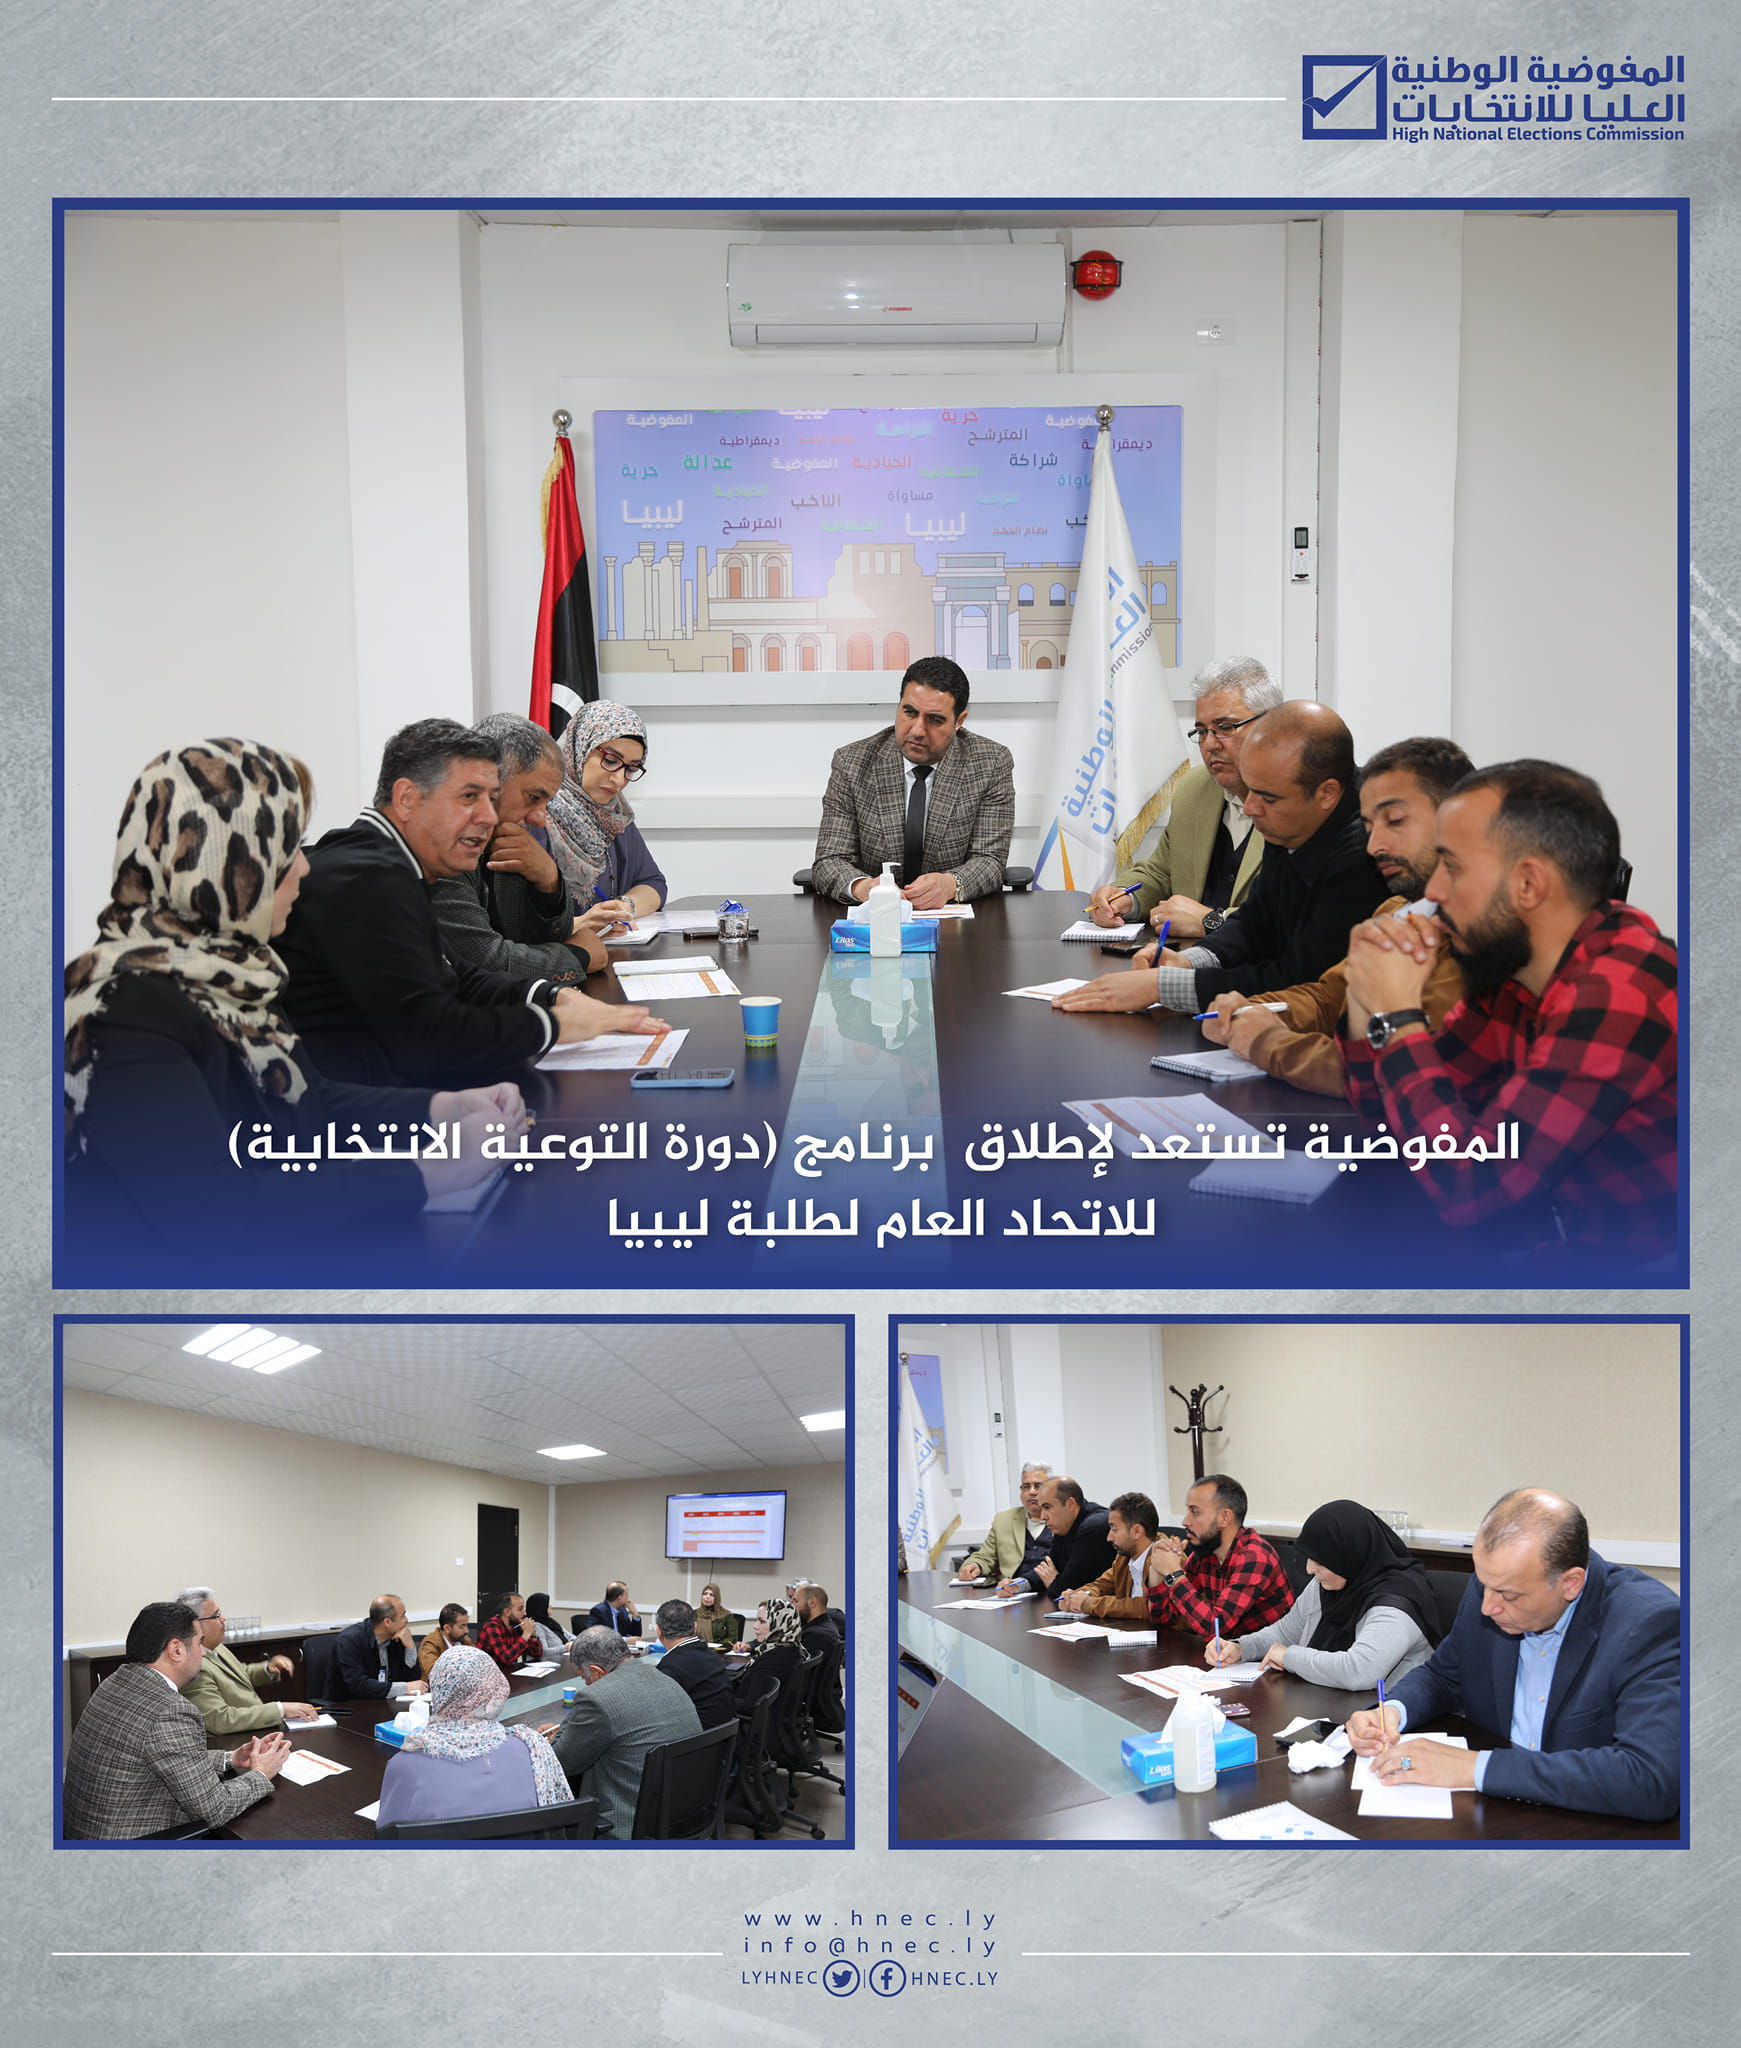 المفوضية تستعد لإطلاق (دورة التوعية الانتخابية) للاتحاد العام لطلبة ليبيا .